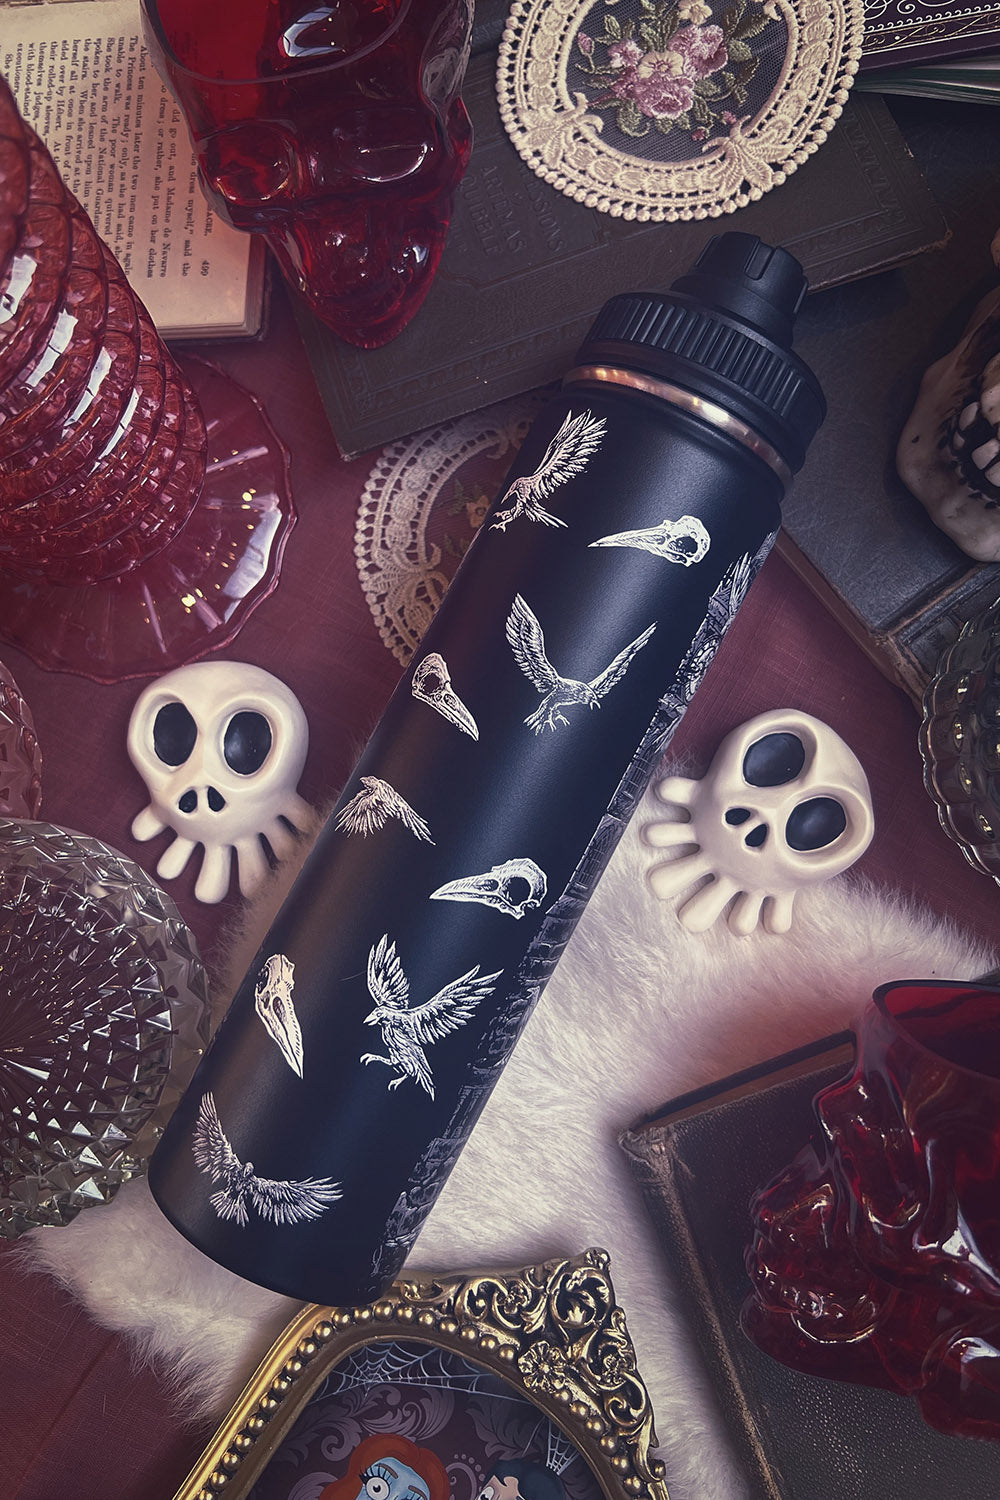 raven skull water bottle